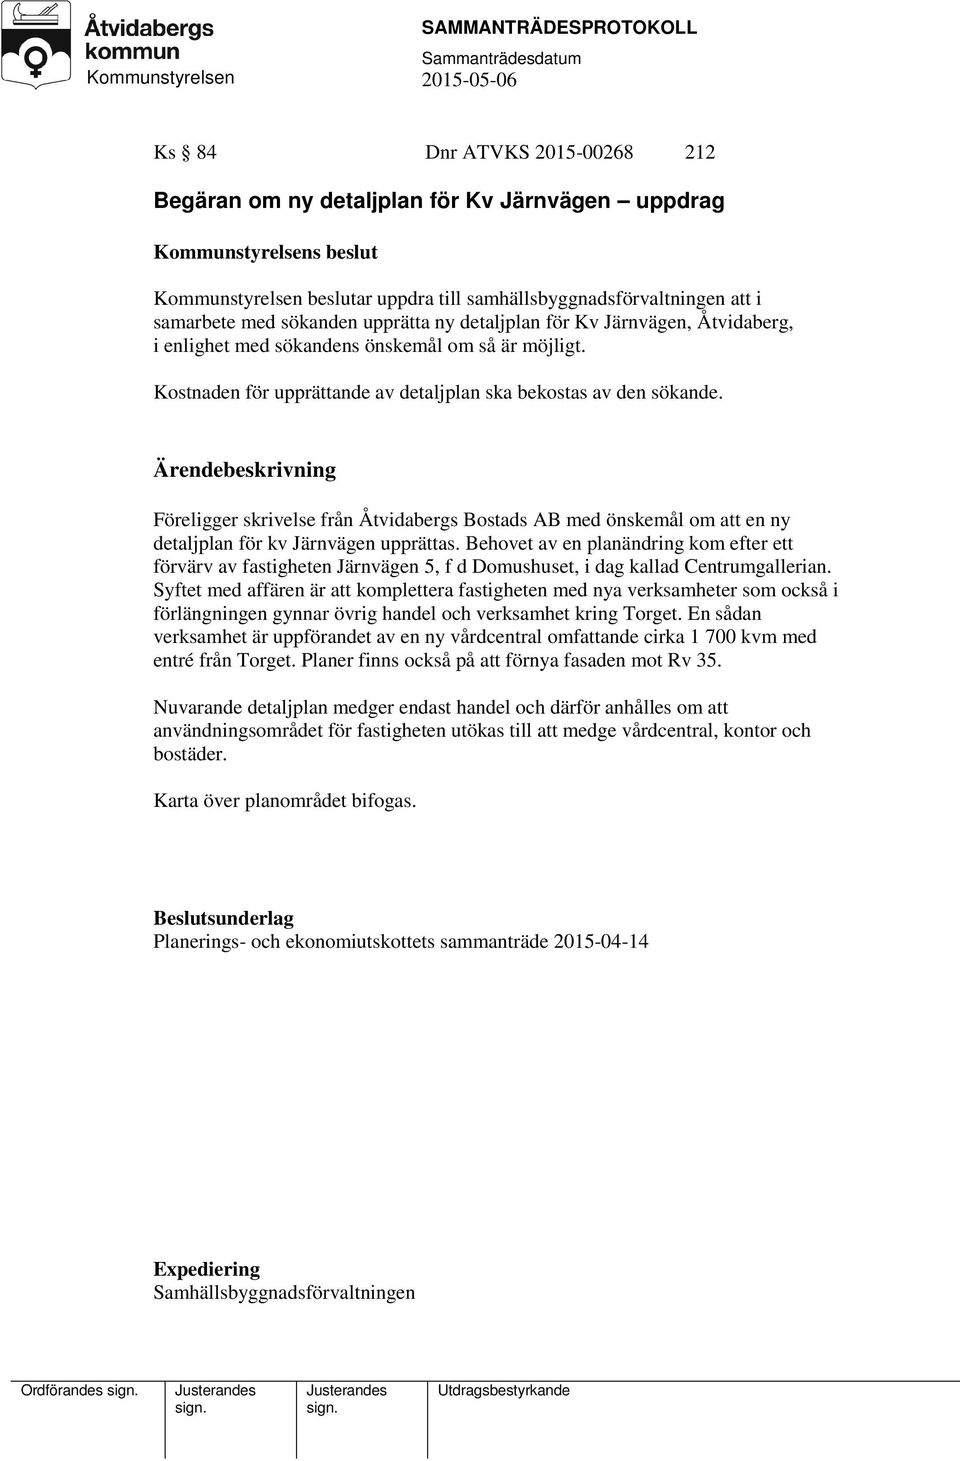 Föreligger skrivelse från Åtvidabergs Bostads AB med önskemål om att en ny detaljplan för kv Järnvägen upprättas.